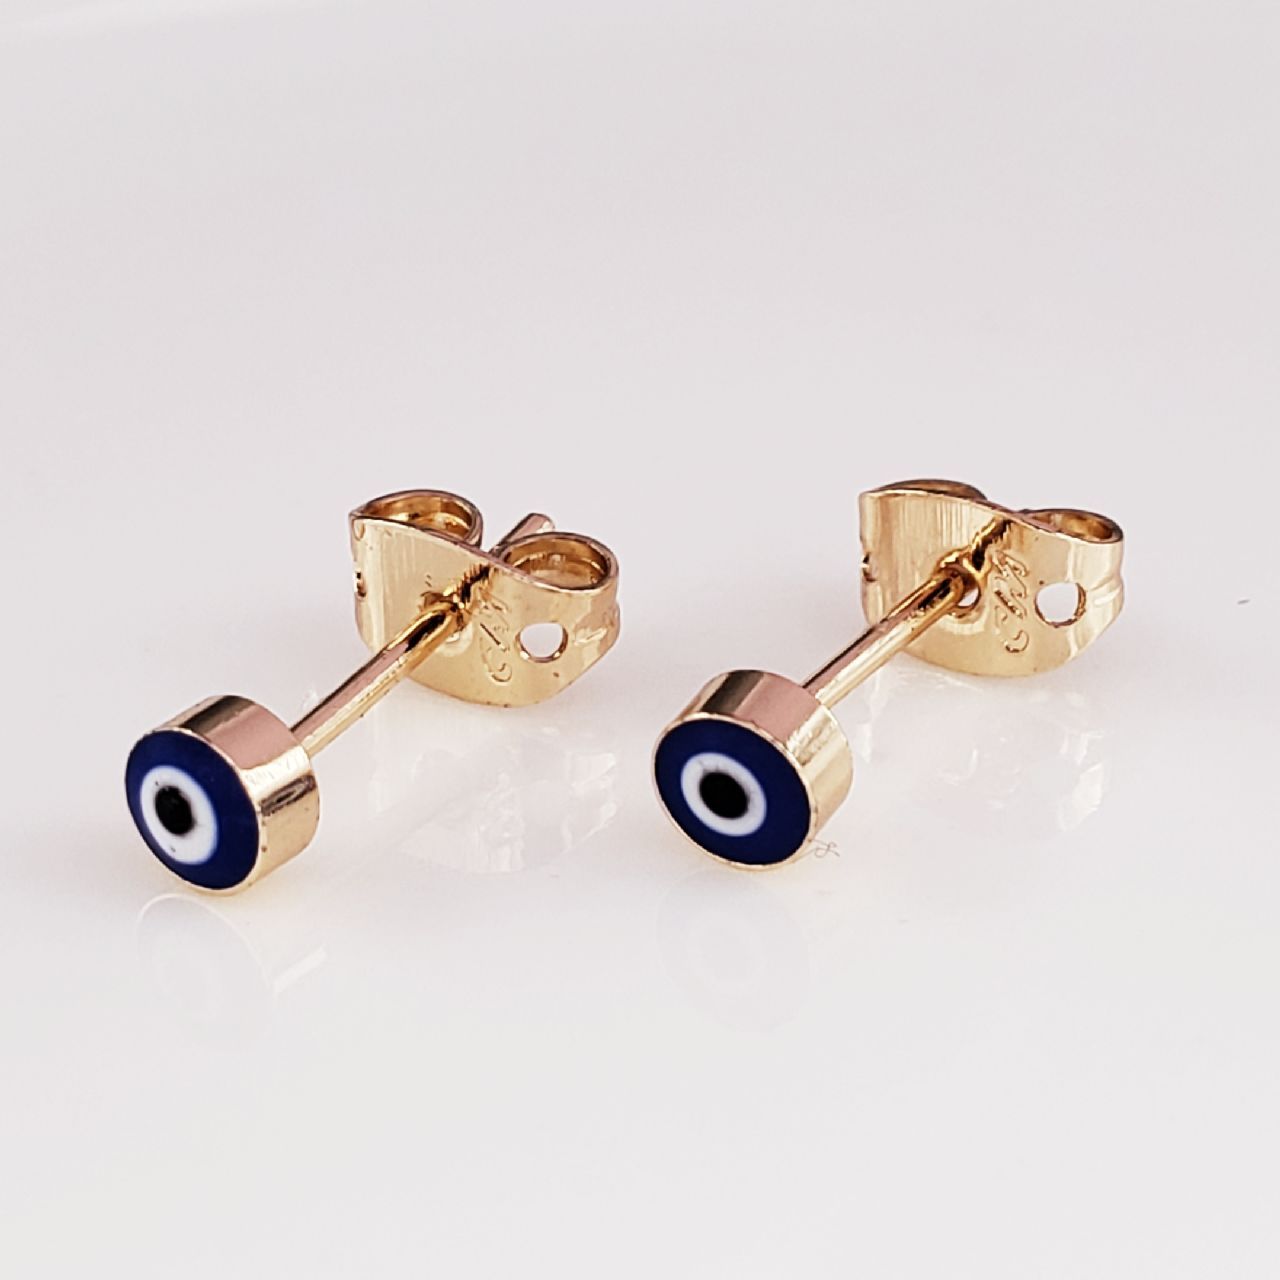 Tiny Evil Eye Gold Black Copper Enamel Stud Earring Pair For Women